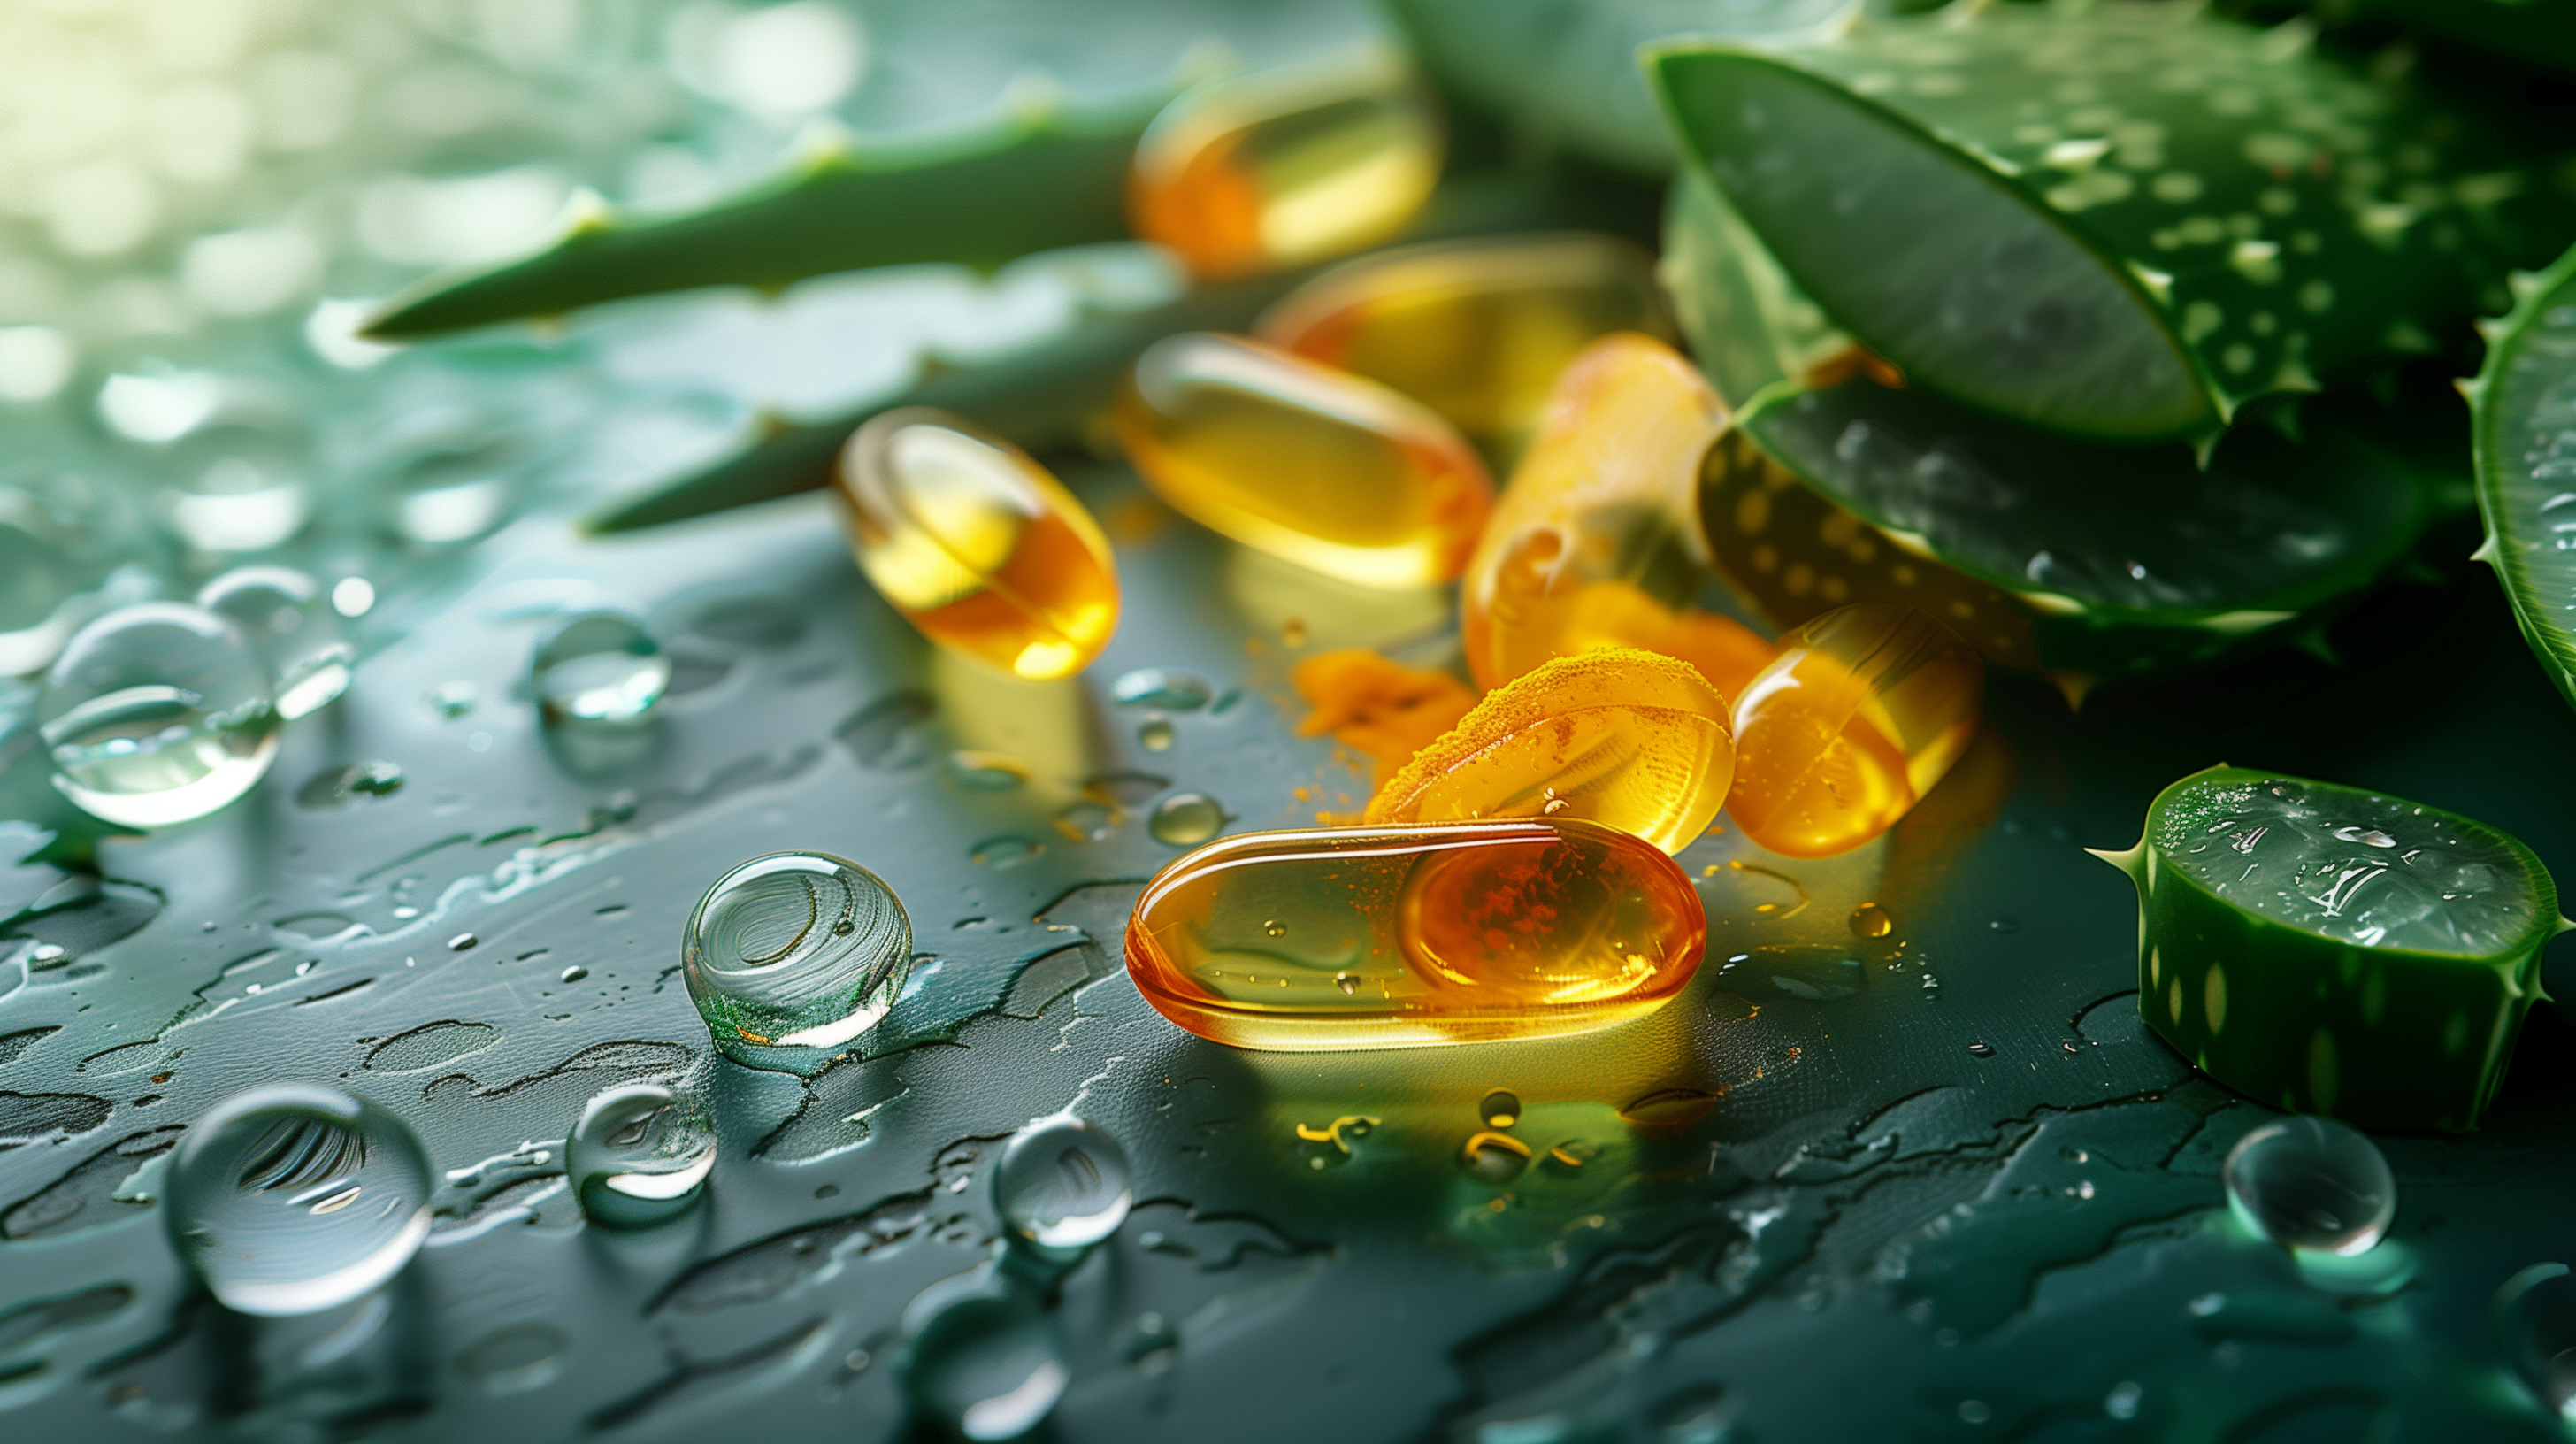 aloe vera, turmeric, and omega-3 fish oil capsules